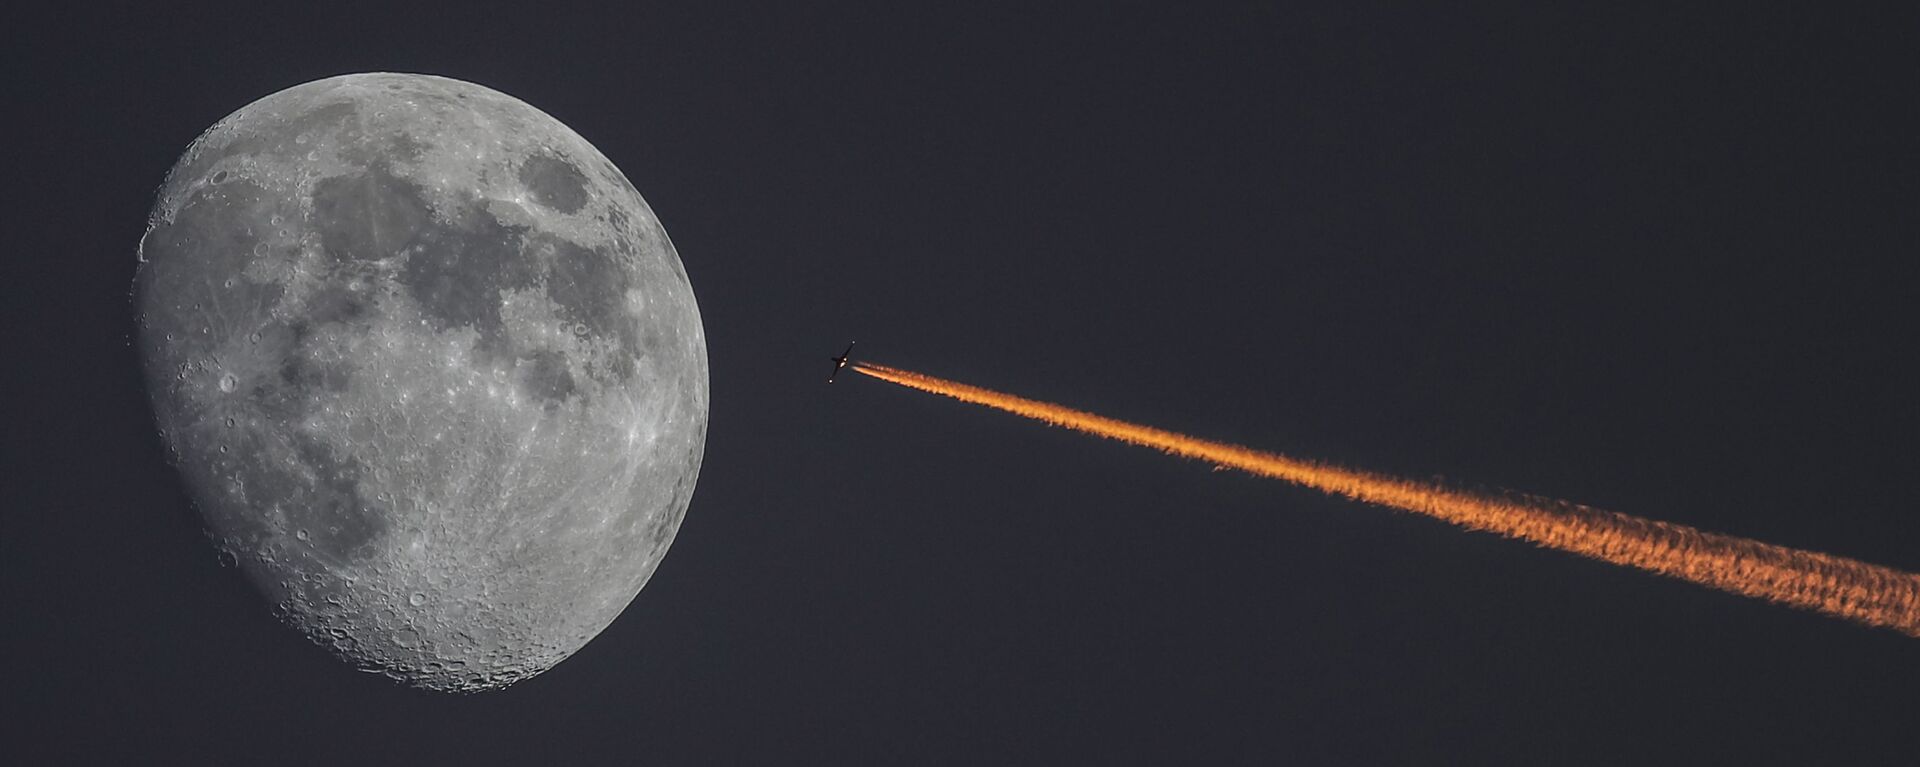 Луна и самолет на закате - Sputnik Узбекистан, 1920, 18.02.2021